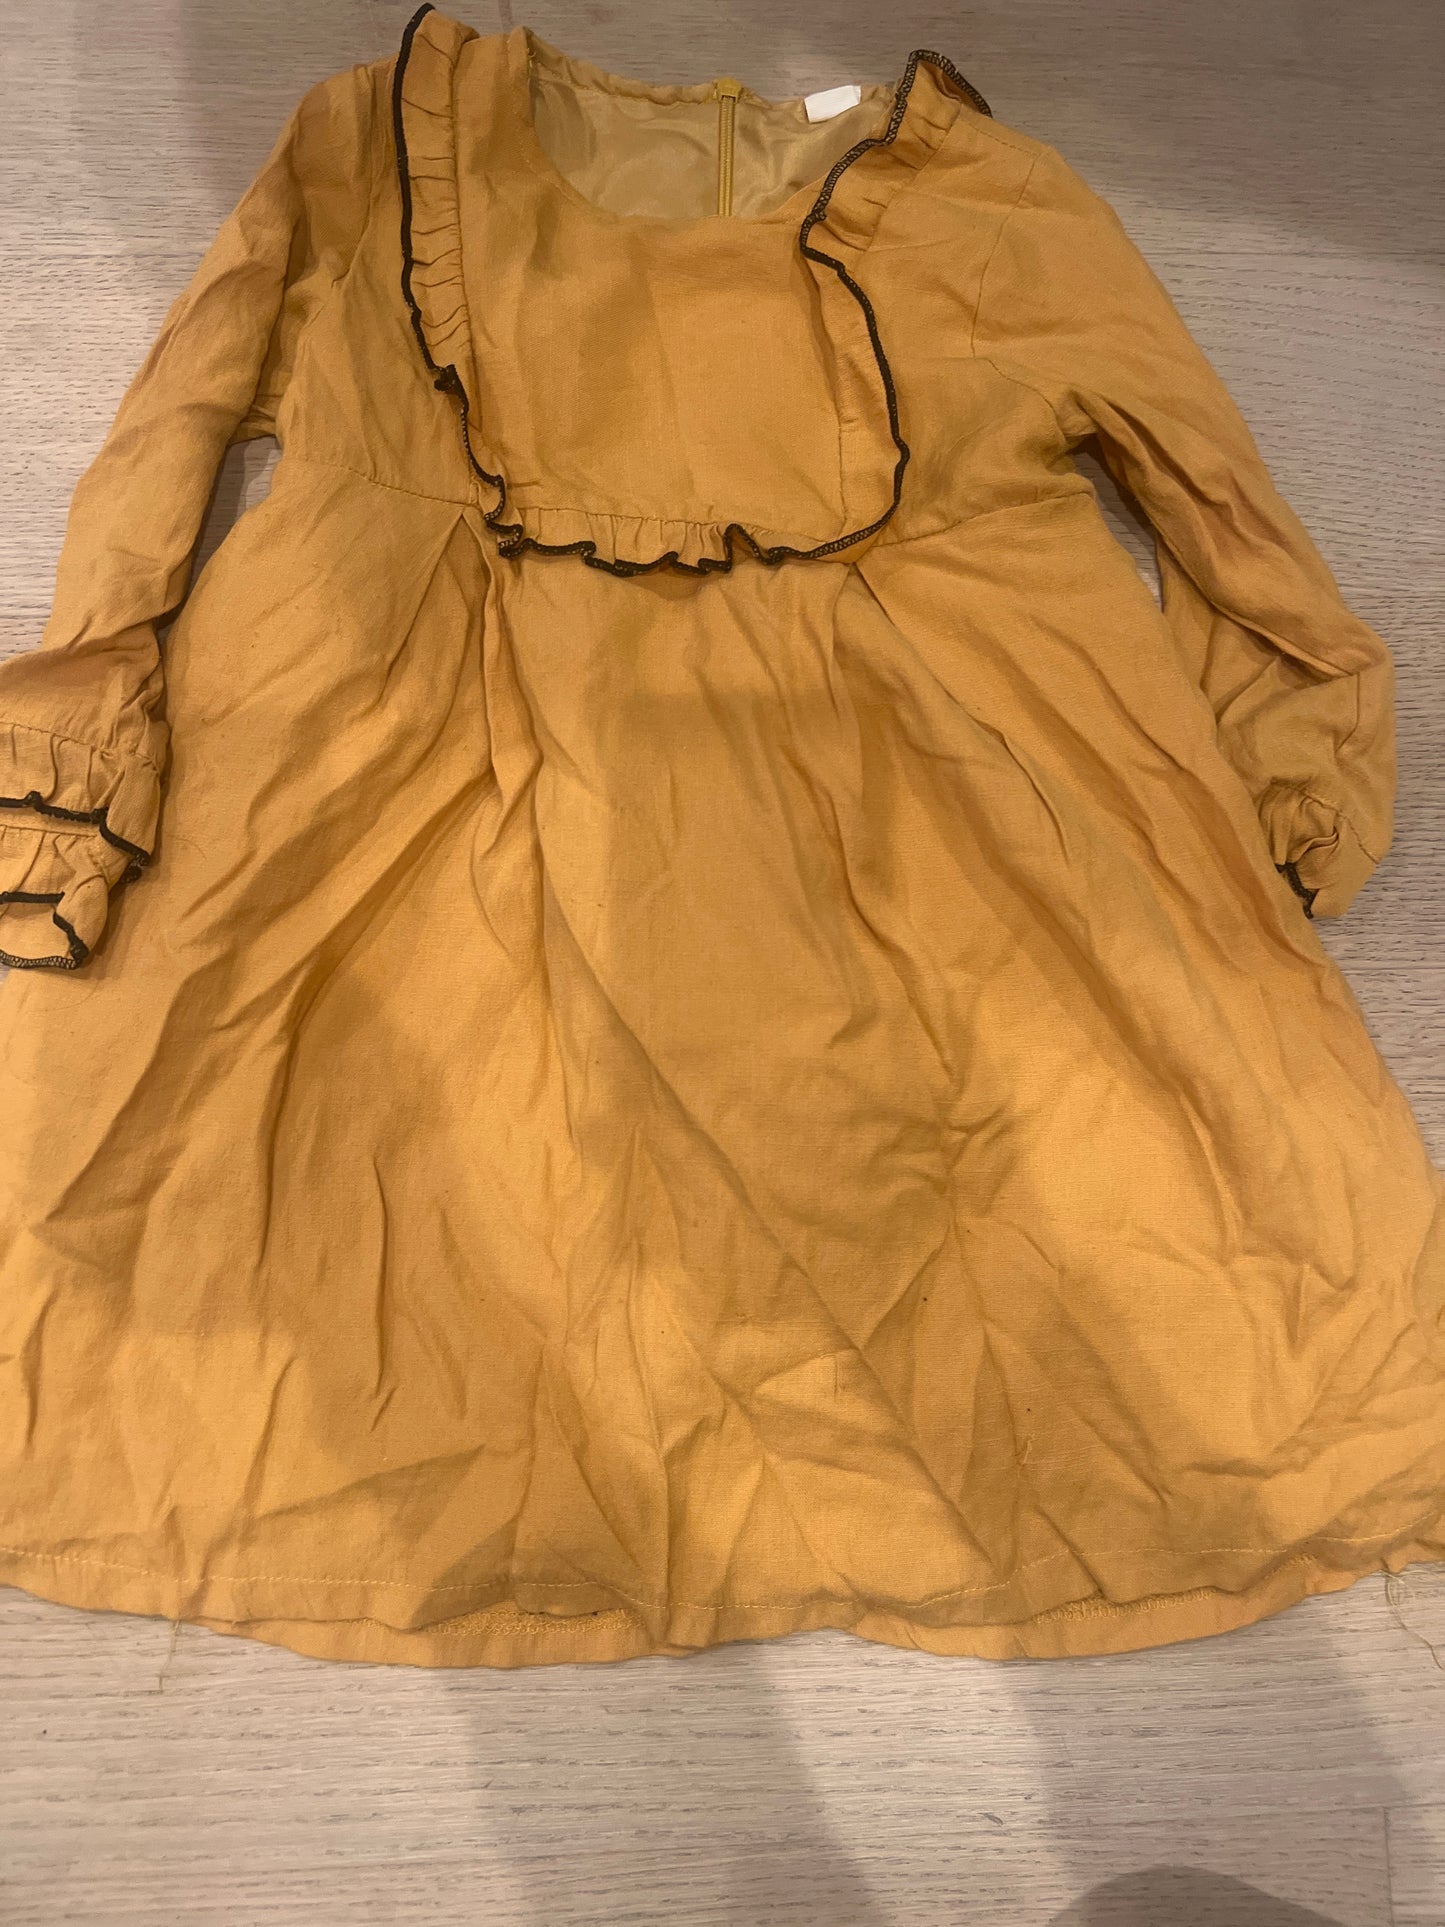 SHEIN size 100 yellow dress with trim